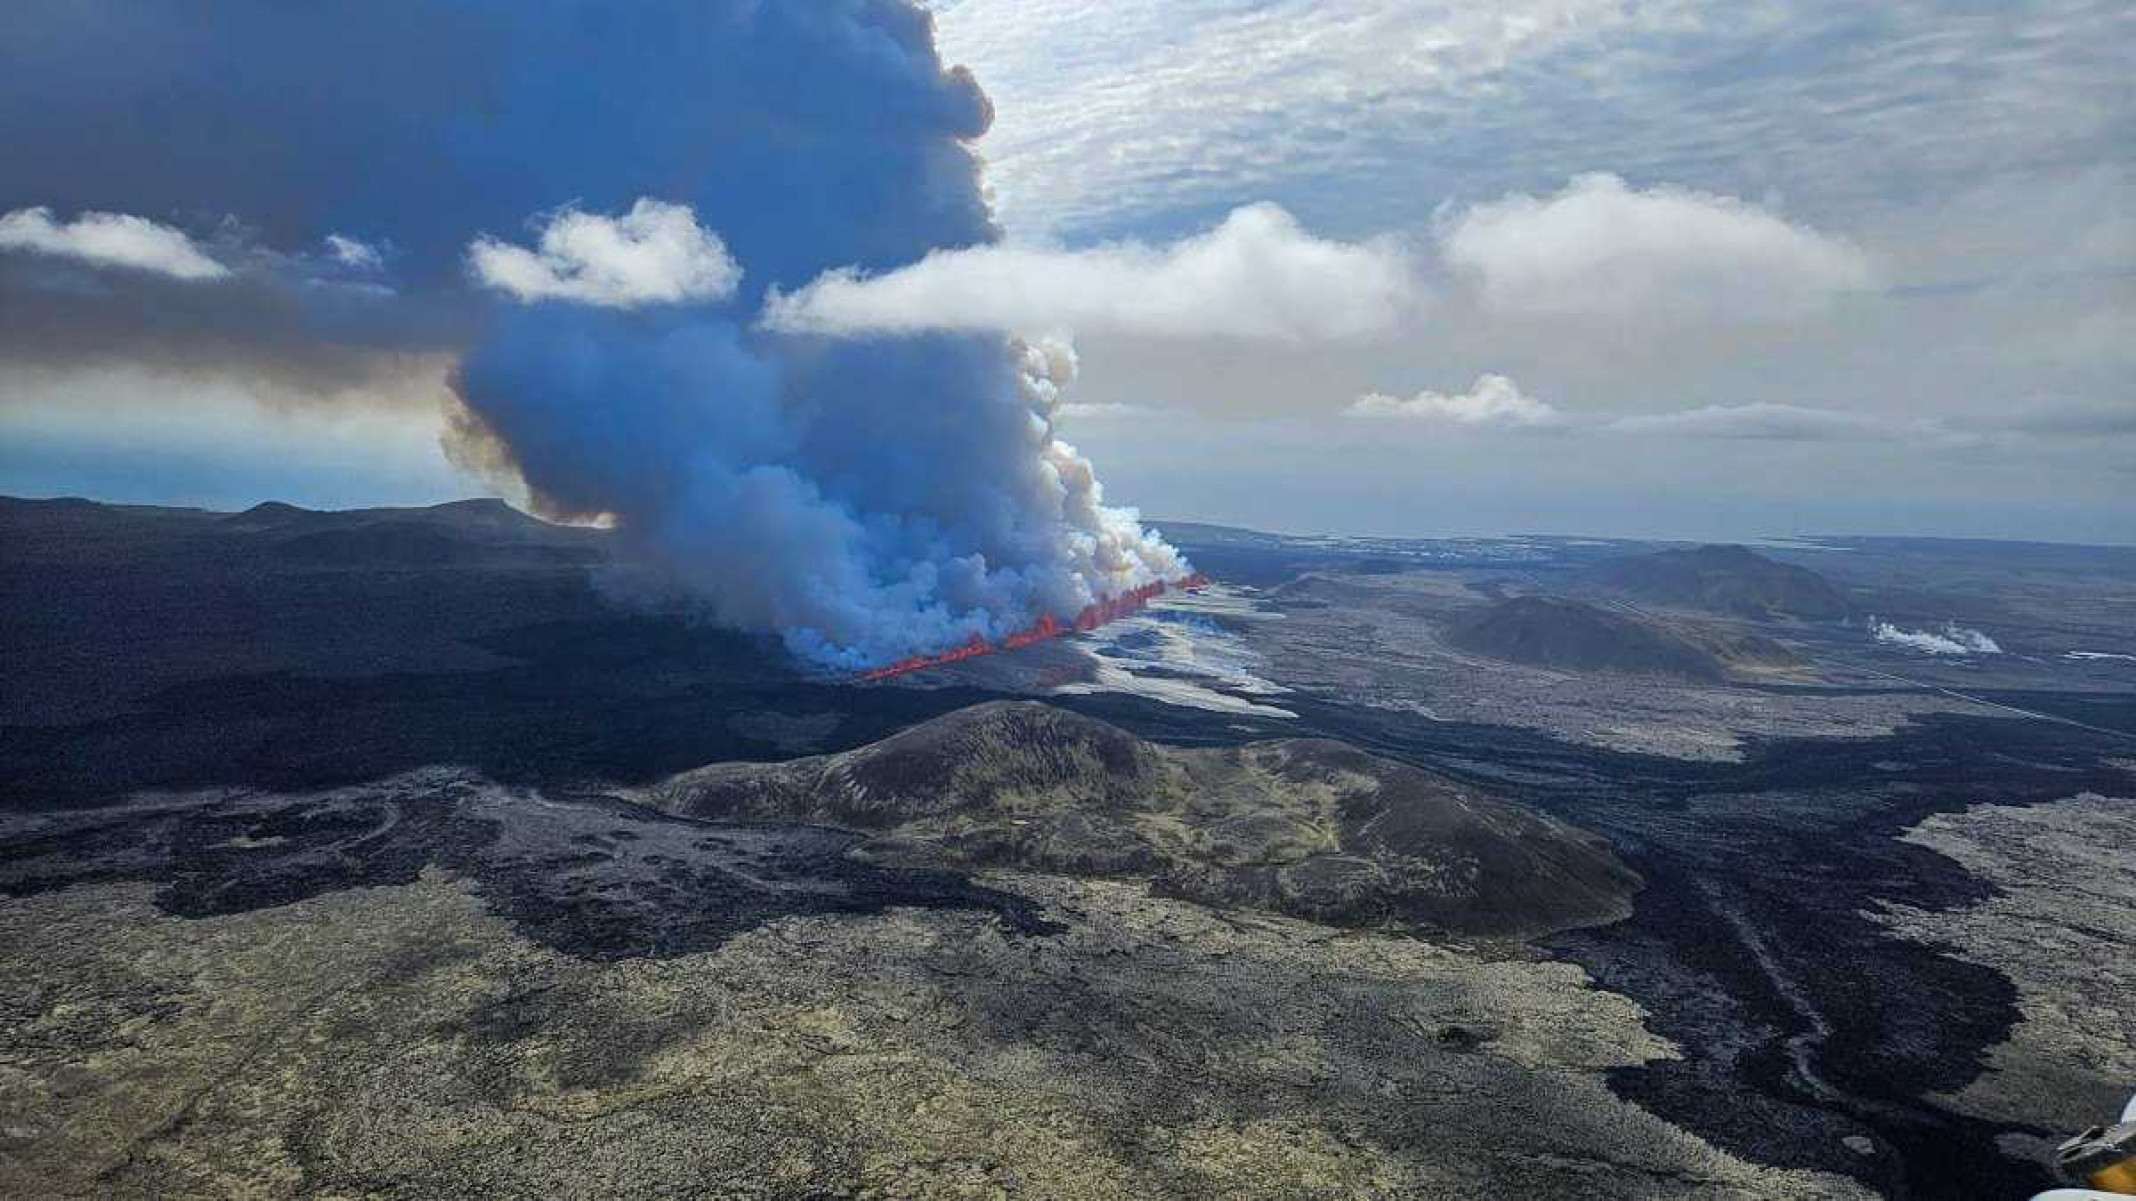 Imagens impressionantes mostram erupção de vulcão na Islândia